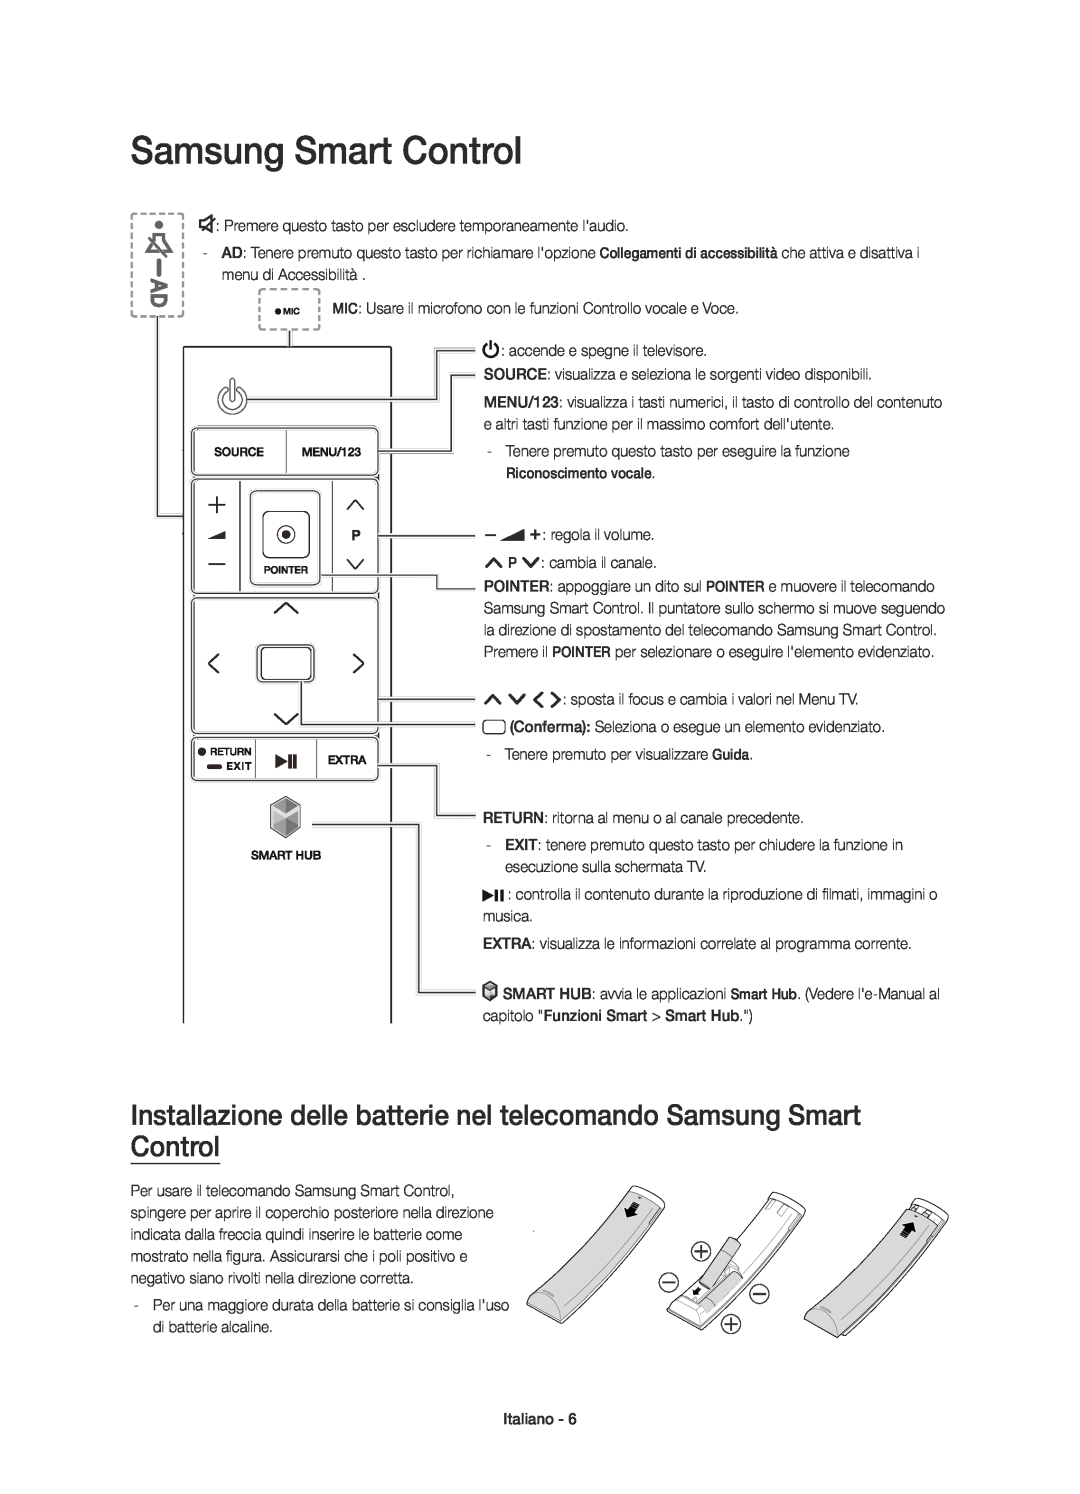 Samsung UE55JU7500TXXC, UE48JU7500TXXC manual Installazione delle batterie nel telecomando Samsung Smart Control 